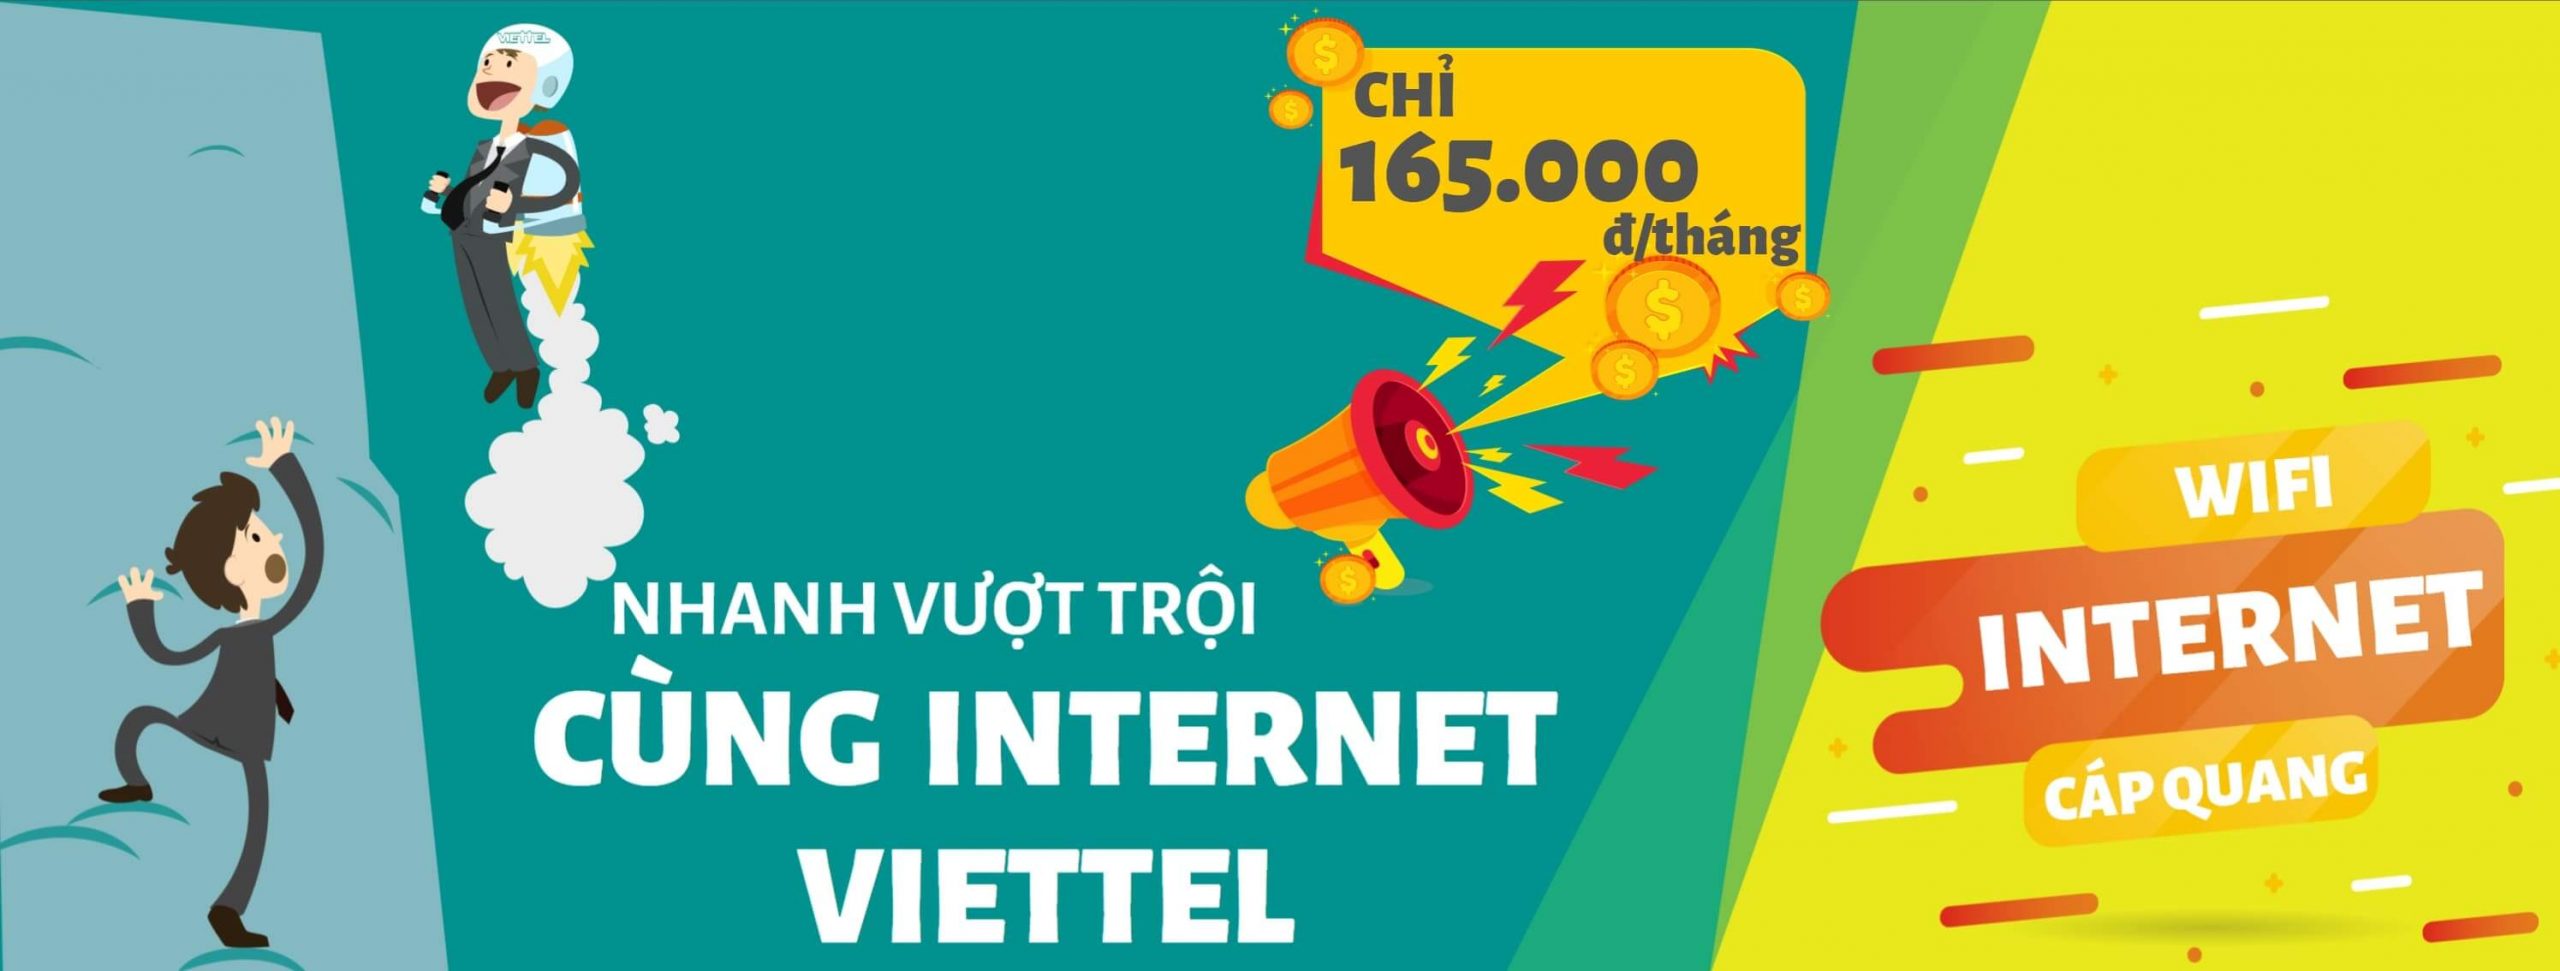 Lắp đặt mạng Viettel Internet Wifi cáp quang tại Đống Đa, Hà Nội 2022